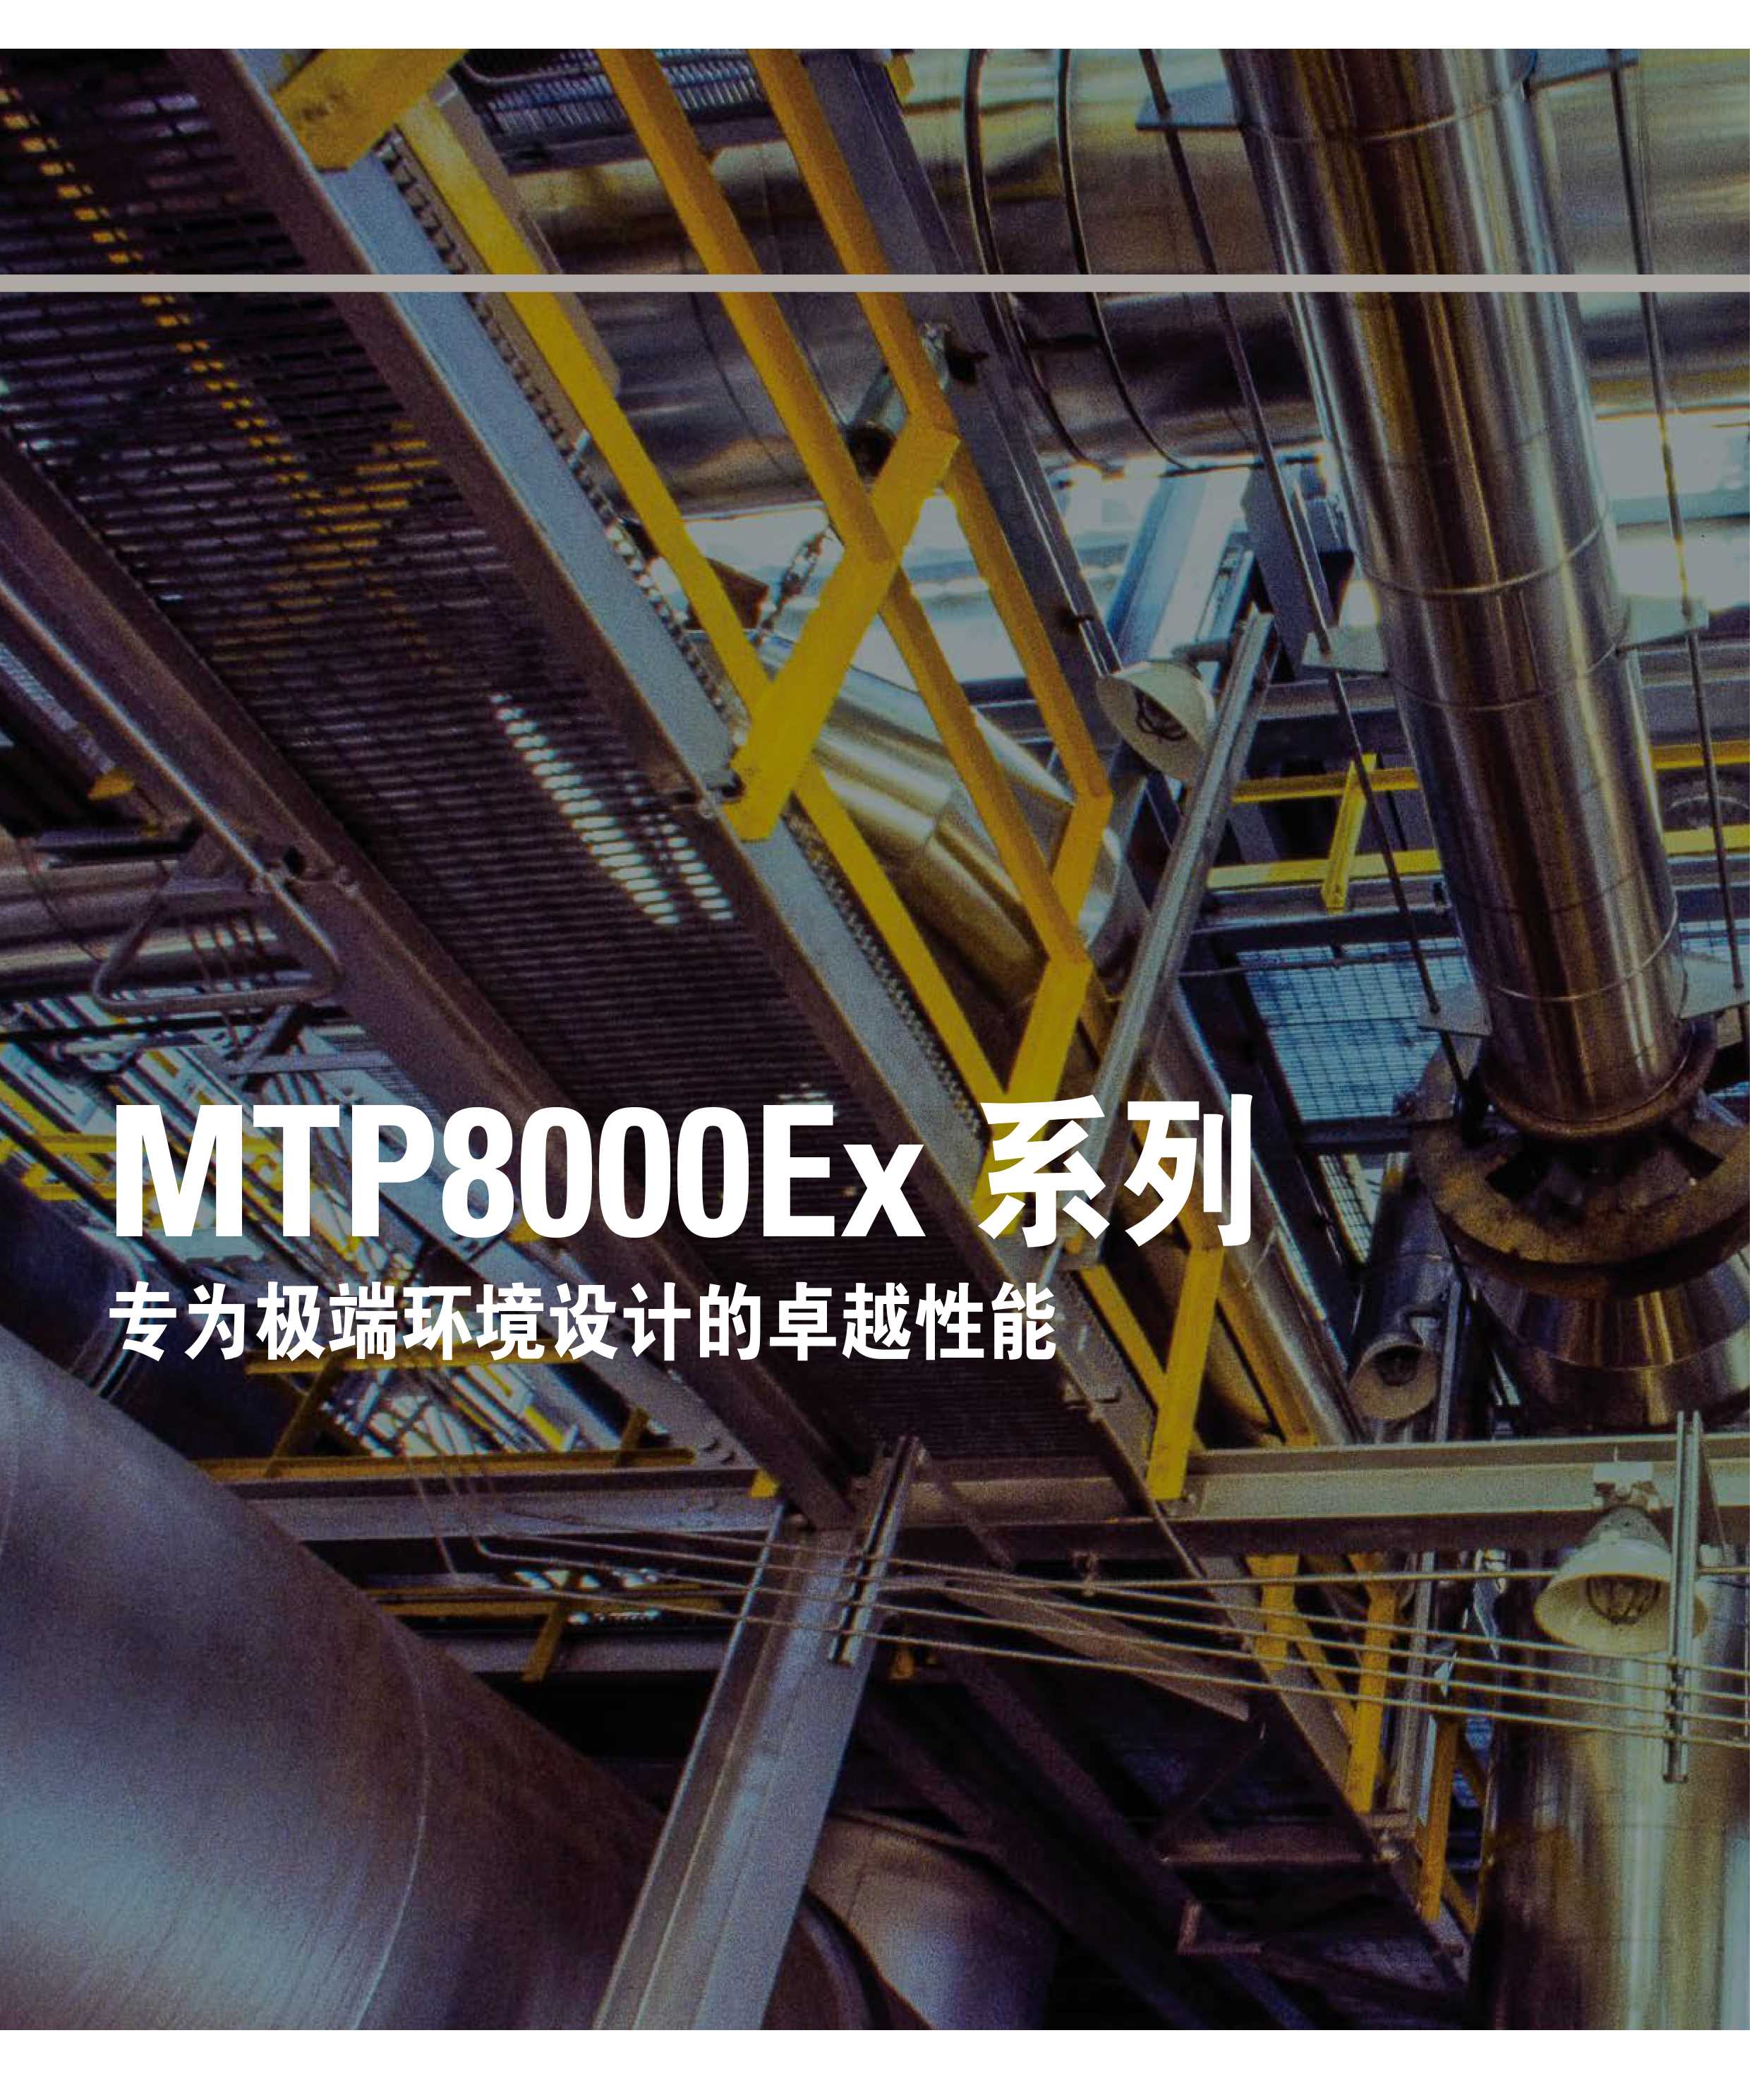 MTP8550Ex系列TETRA-ATEX-防爆型对讲机彩页_02